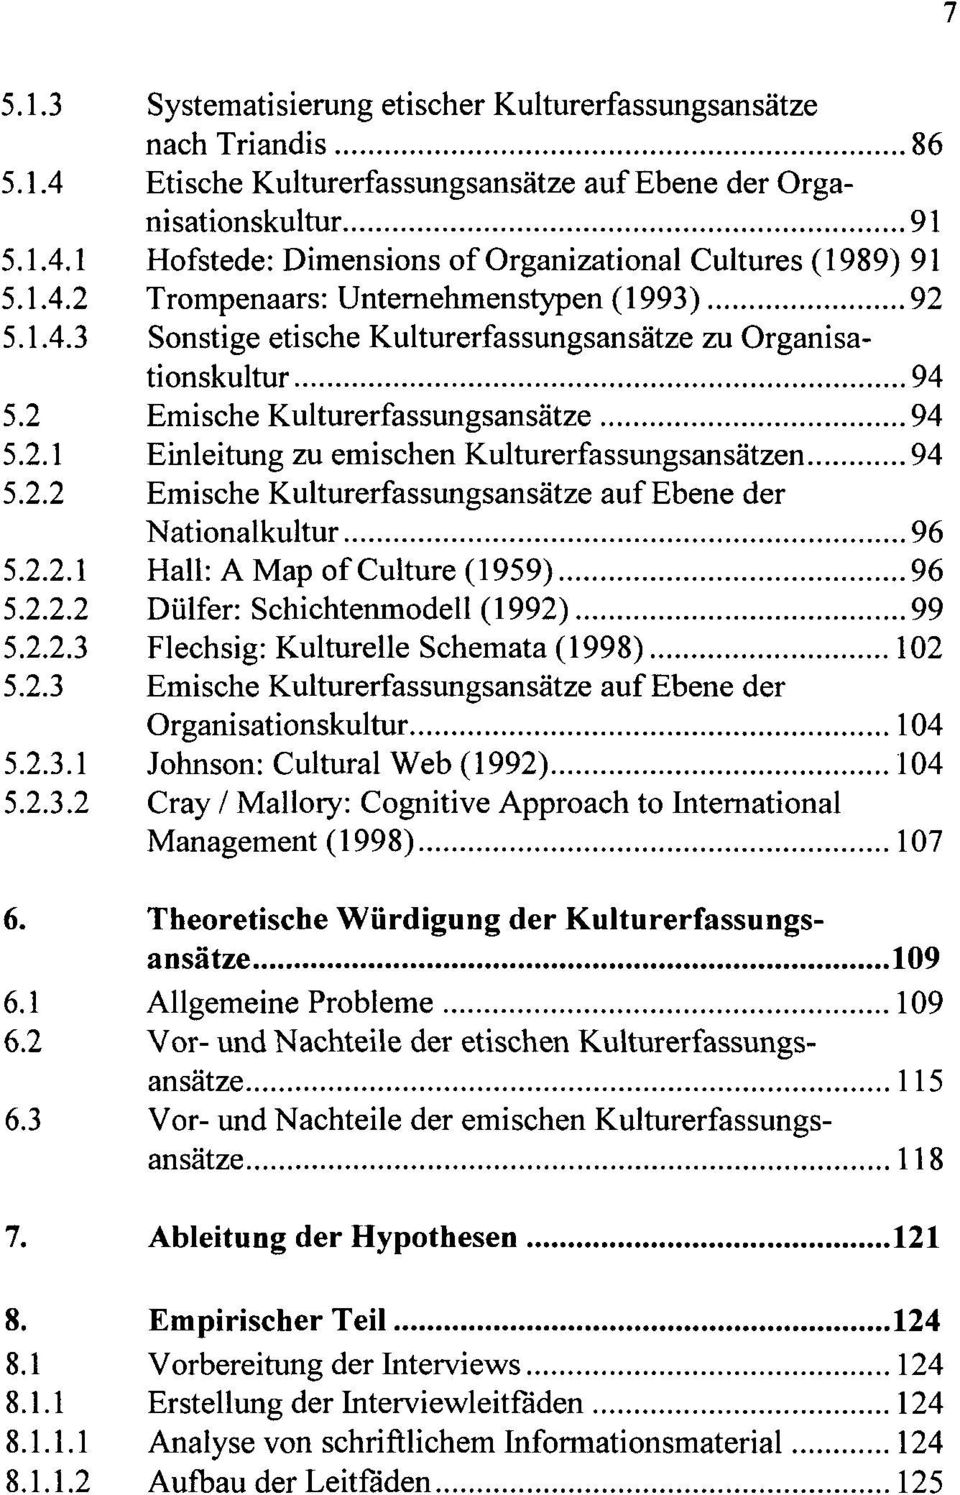 2.2 Emische Kulturerfassungsansätze auf Ebene der Nationalkultur 96 5.2.2.1 Hall: A Map ofculture (1959) 96 5.2.2.2 Dülfer: Schichtenmodell (1992) 99 5.2.2.3 Flechsig: Kulturelle Schemata (1998) 102 5.